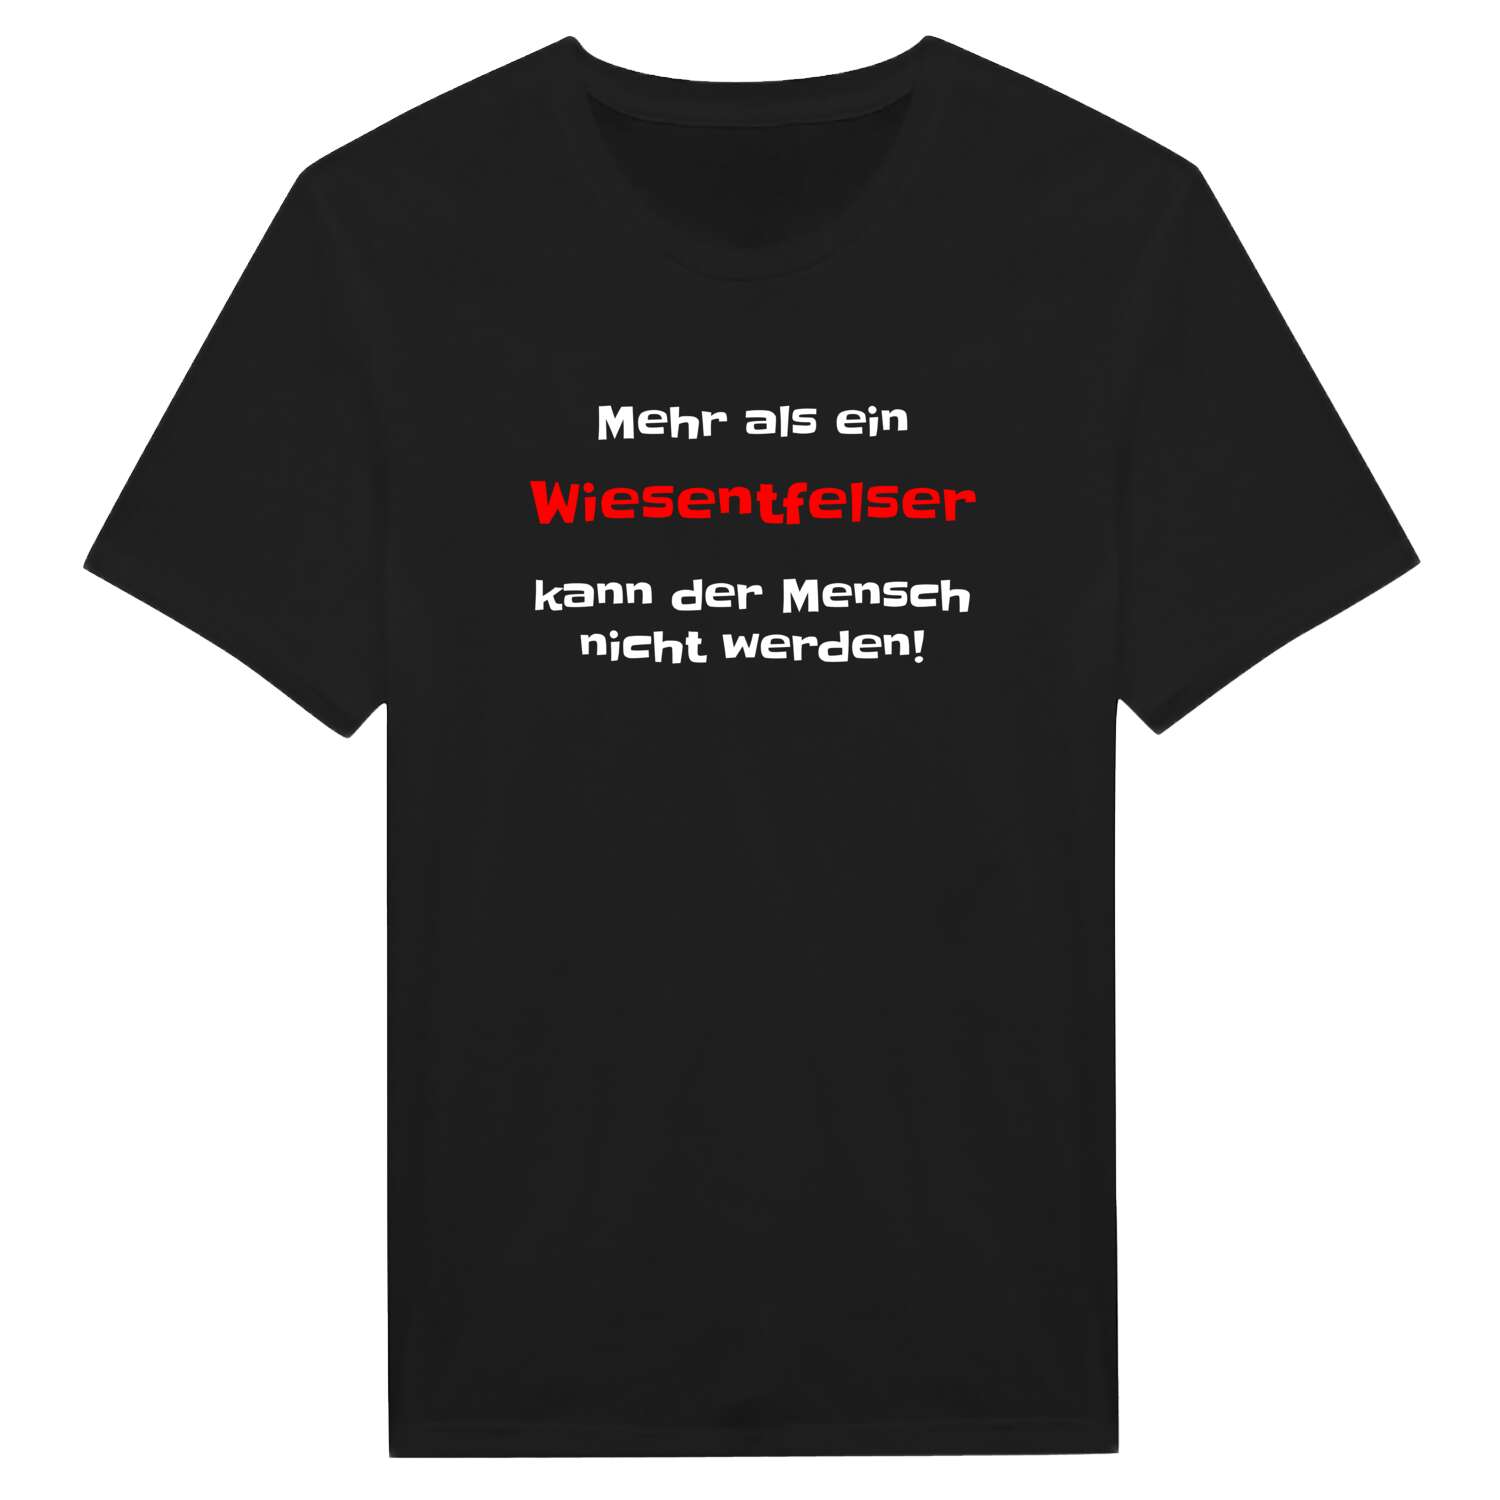 Wiesentfels T-Shirt »Mehr als ein«